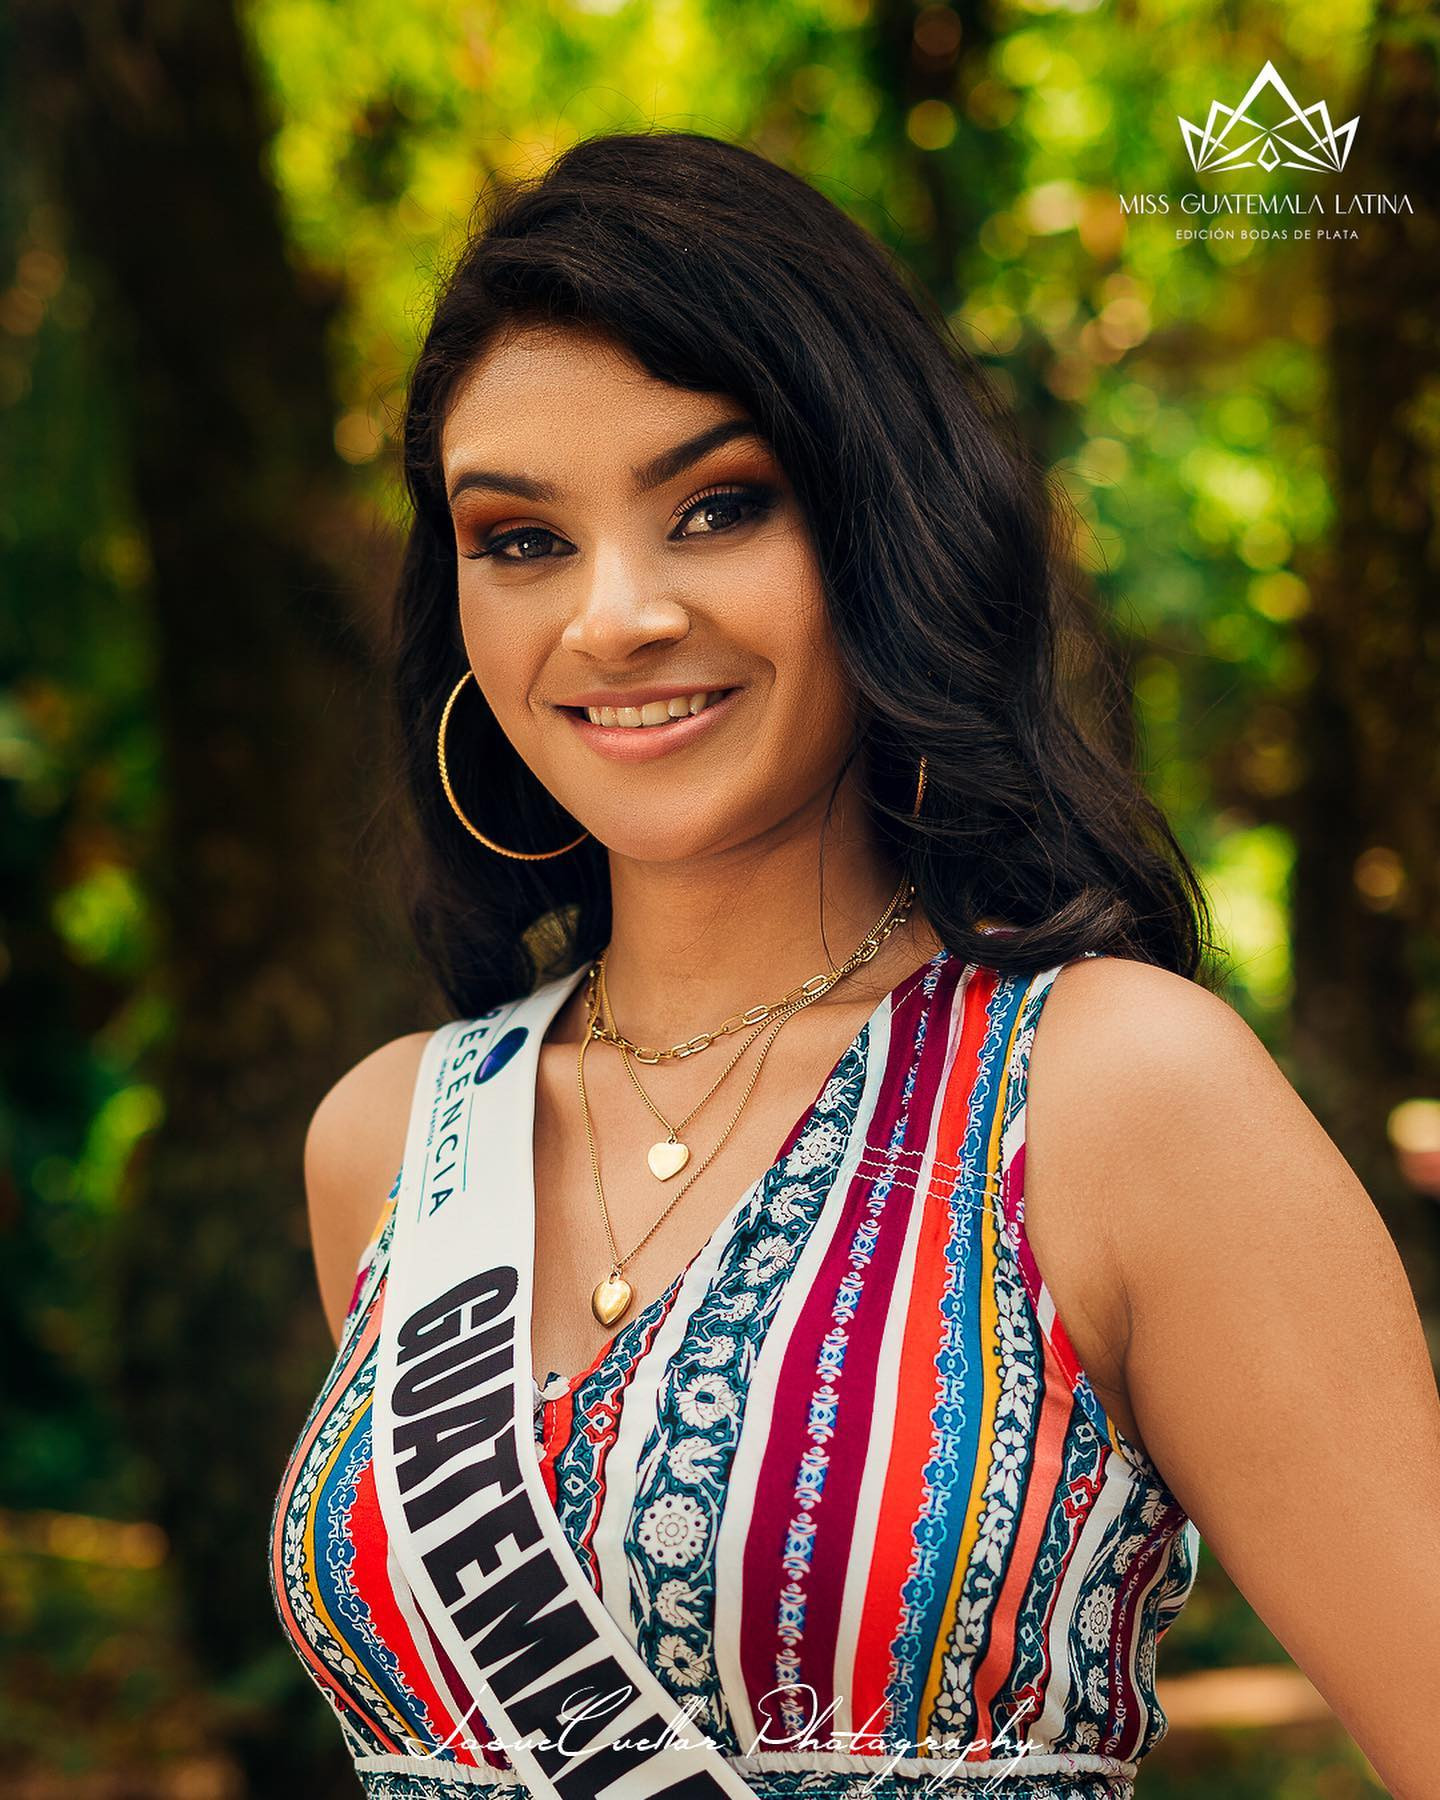 Latina - candidatas a miss guatemala latina 2021. final: 30 de abril. - Página 8 BFw2J1